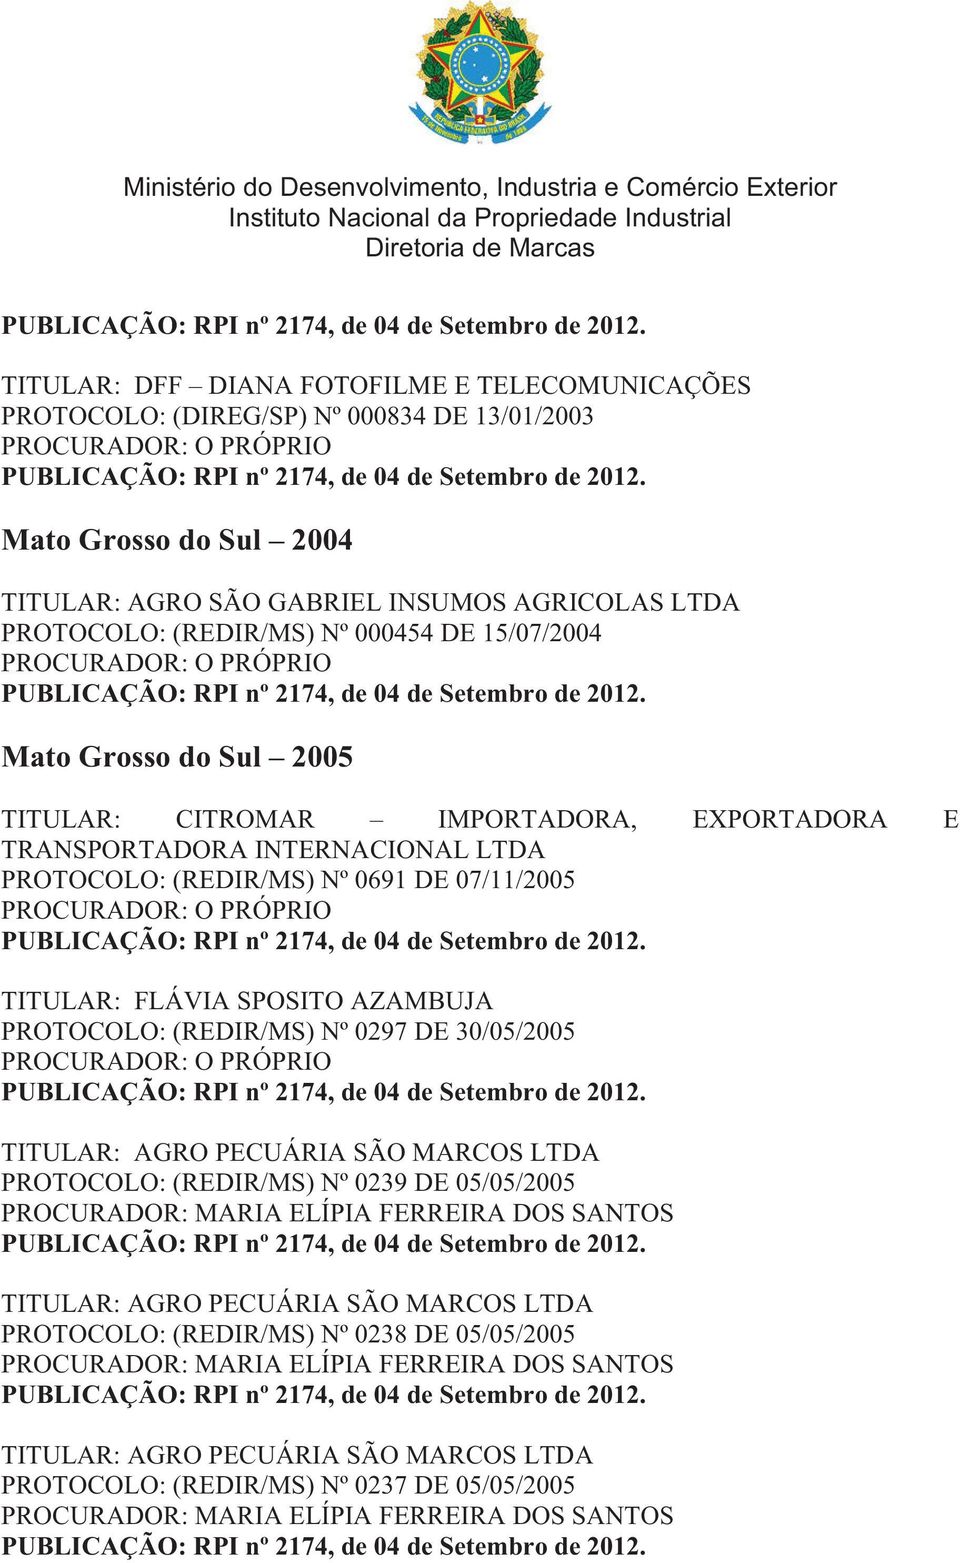 EXPORTADORA E TRANSPORTADORA INTERNACIONAL LTDA PROTOCOLO: (REDIR/MS) Nº 0691 DE 07/11/2005 TITULAR: FLÁVIA SPOSITO AZAMBUJA PROTOCOLO: (REDIR/MS) Nº 0297 DE 30/05/2005 TITULAR: AGRO PECUÁRIA SÃO